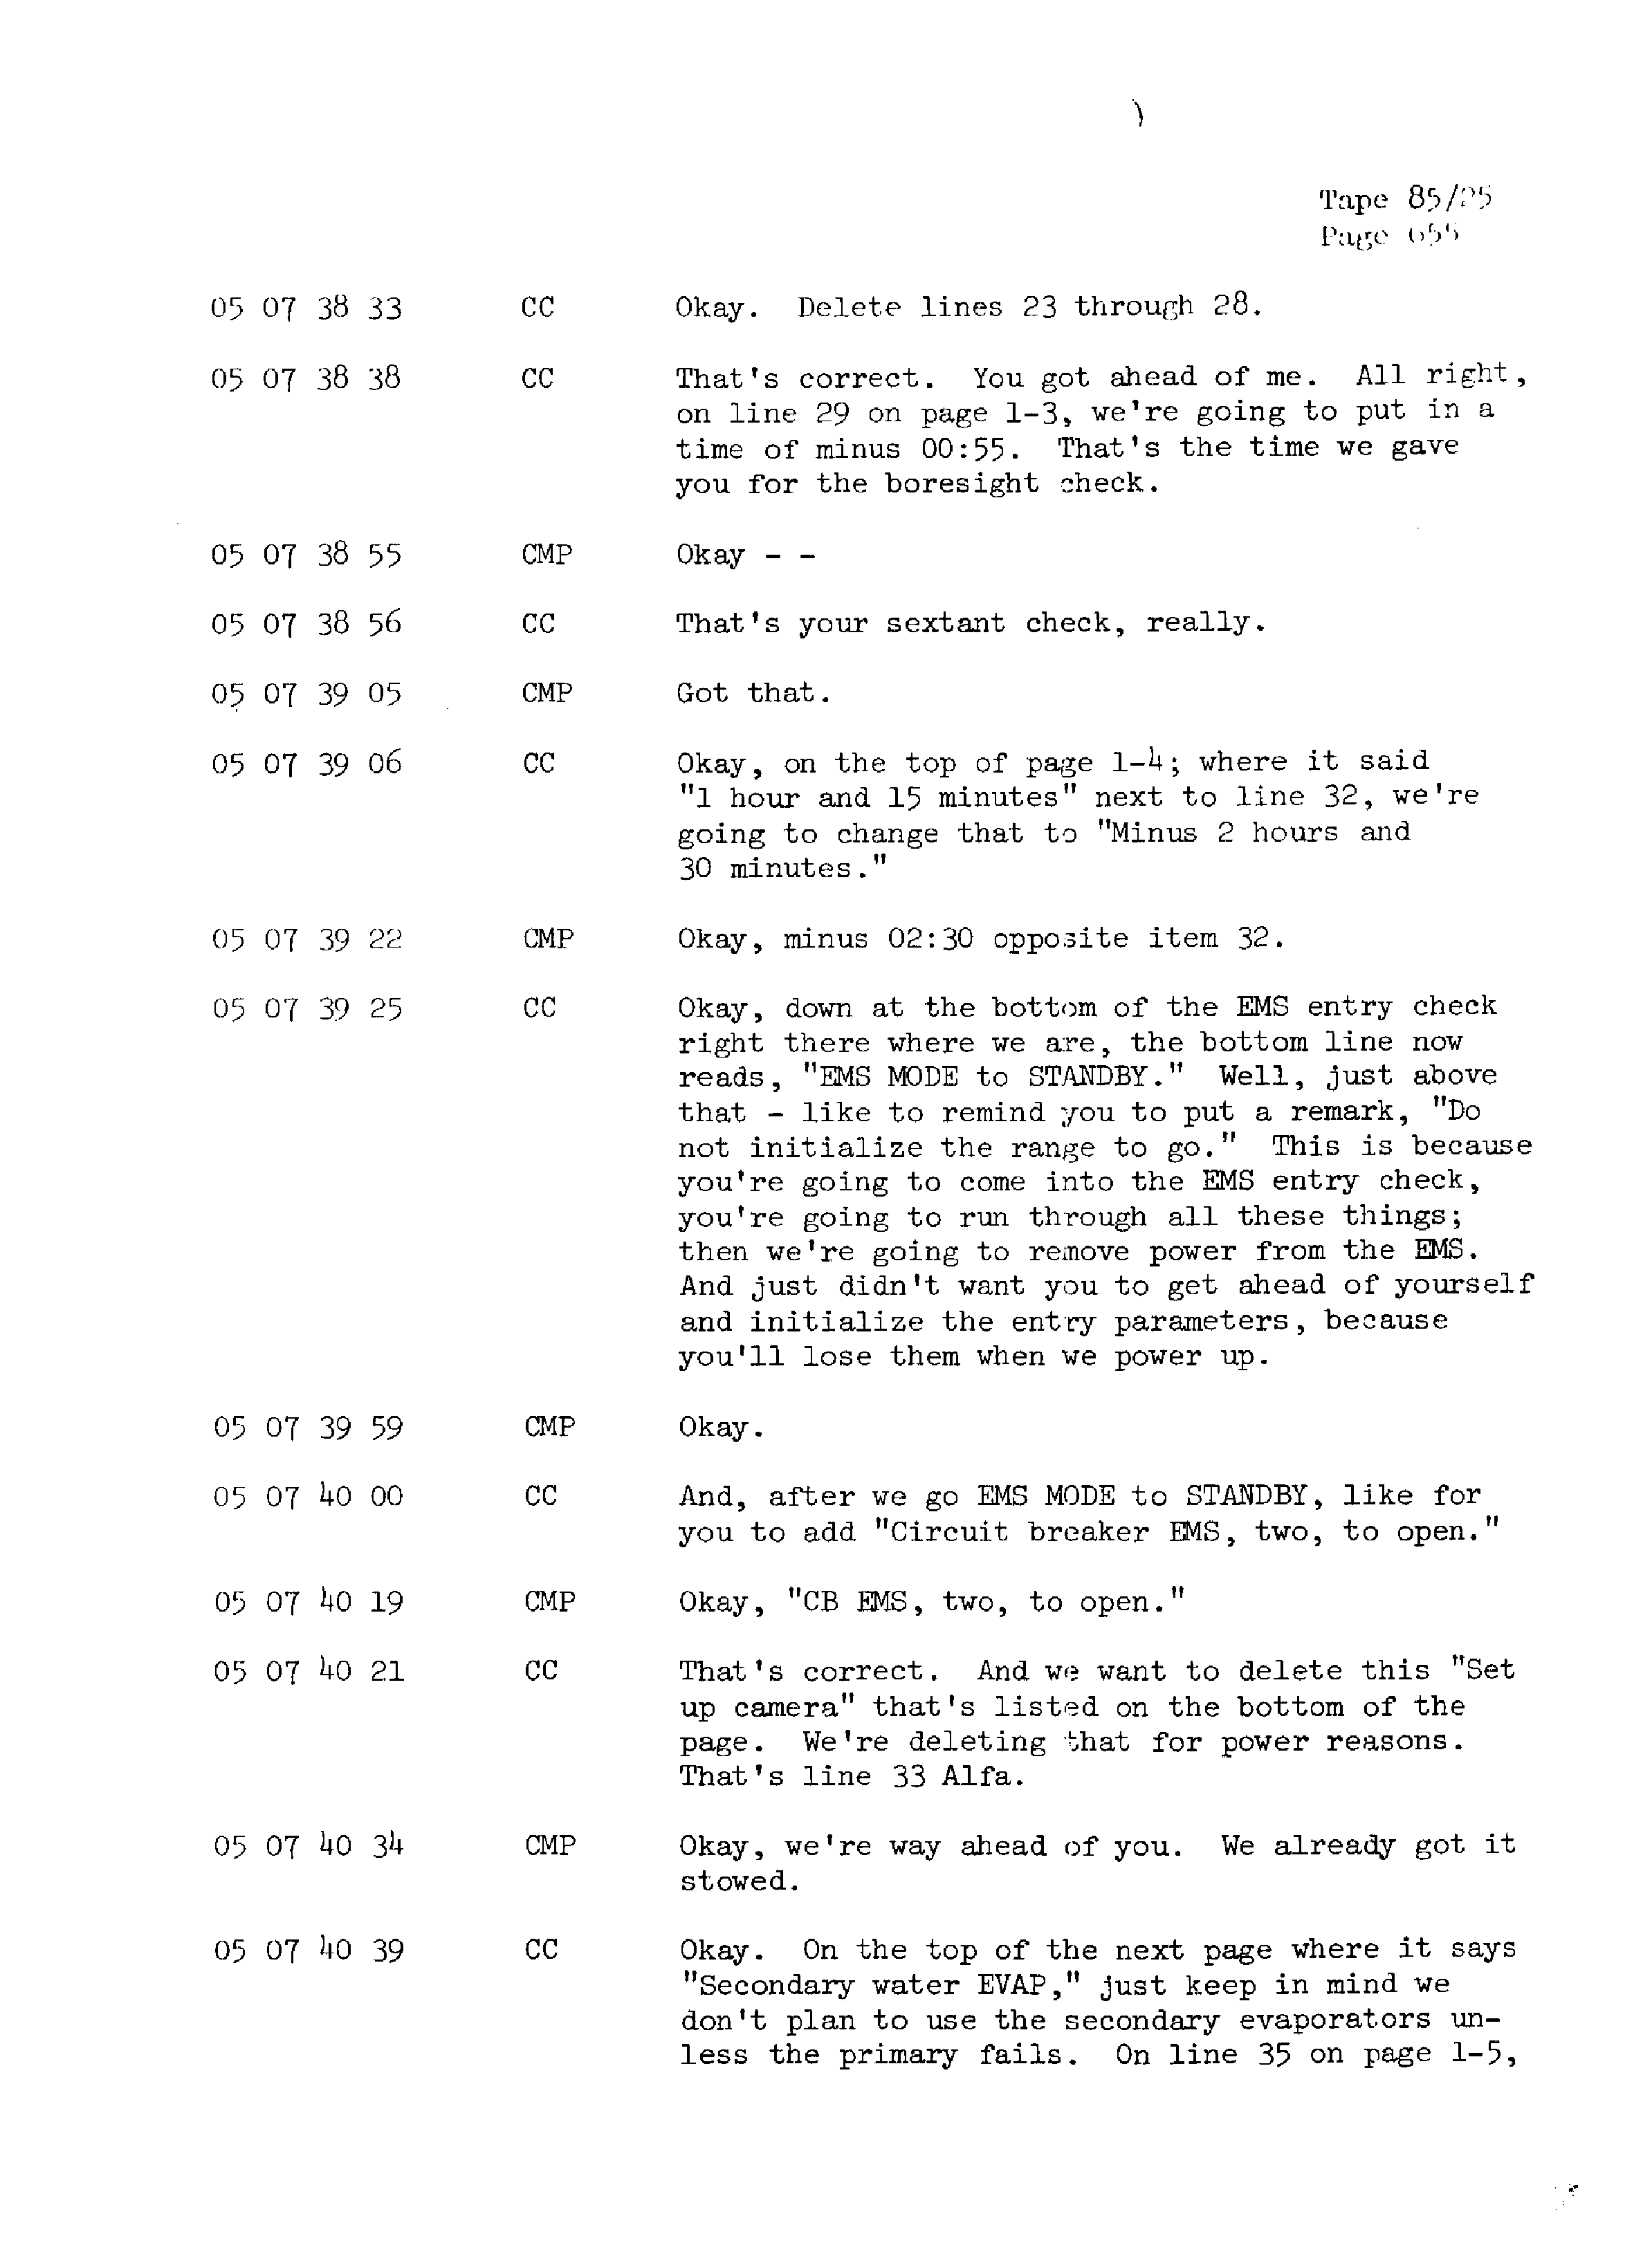 Page 662 of Apollo 13’s original transcript